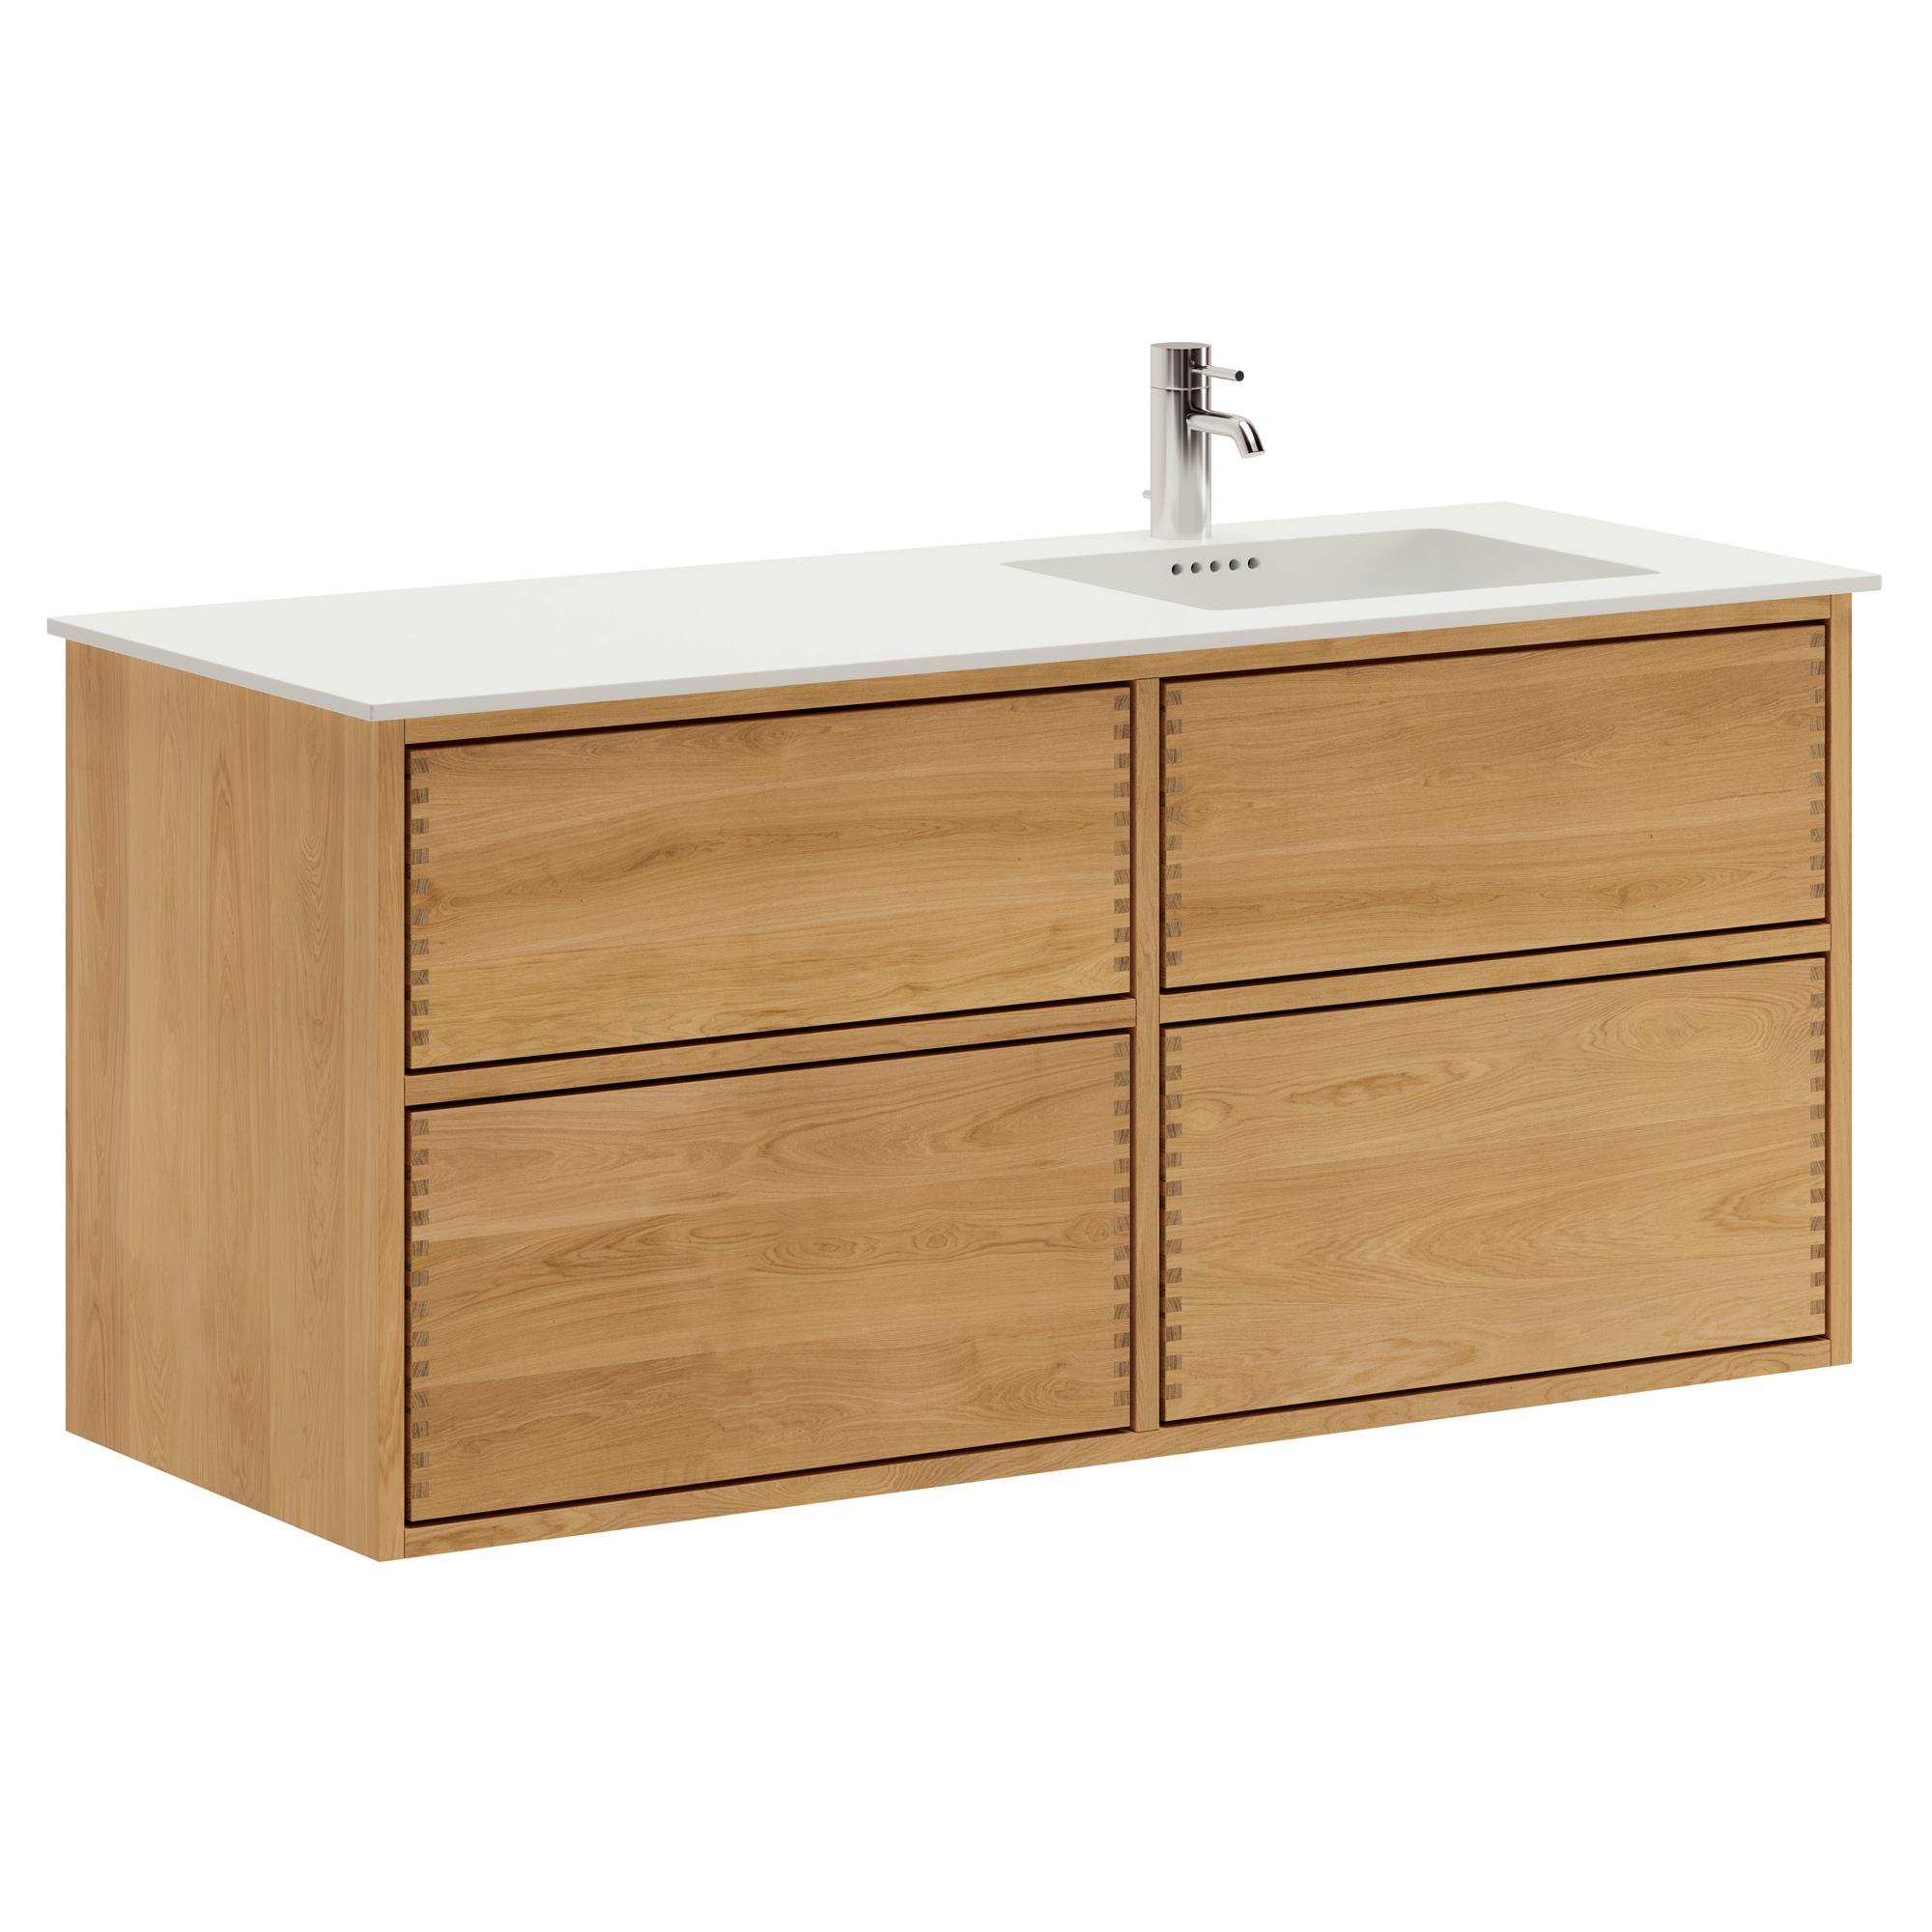 120 cm Just Wood Push Badezimmermöbel mit 4 Schubladen und Solid Surface-Waschbecken - Rechts